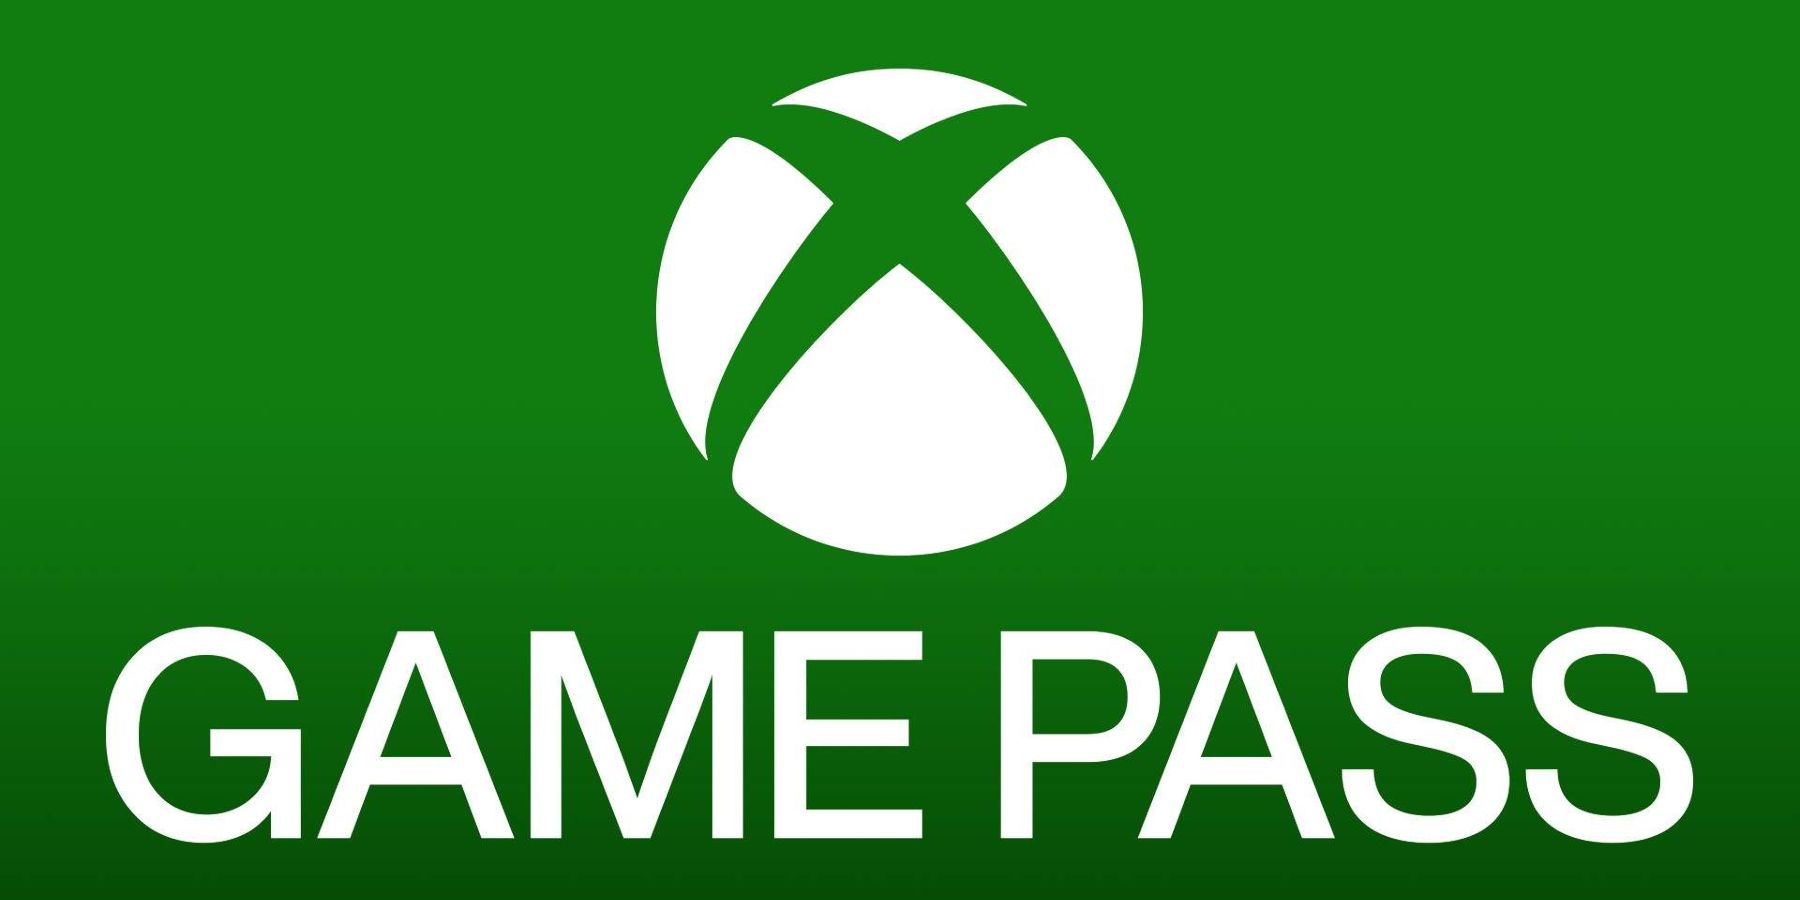 OPPDATERING: Xbox Game Pass-abonnenter på 30 millioner, sier Take-Two CEO